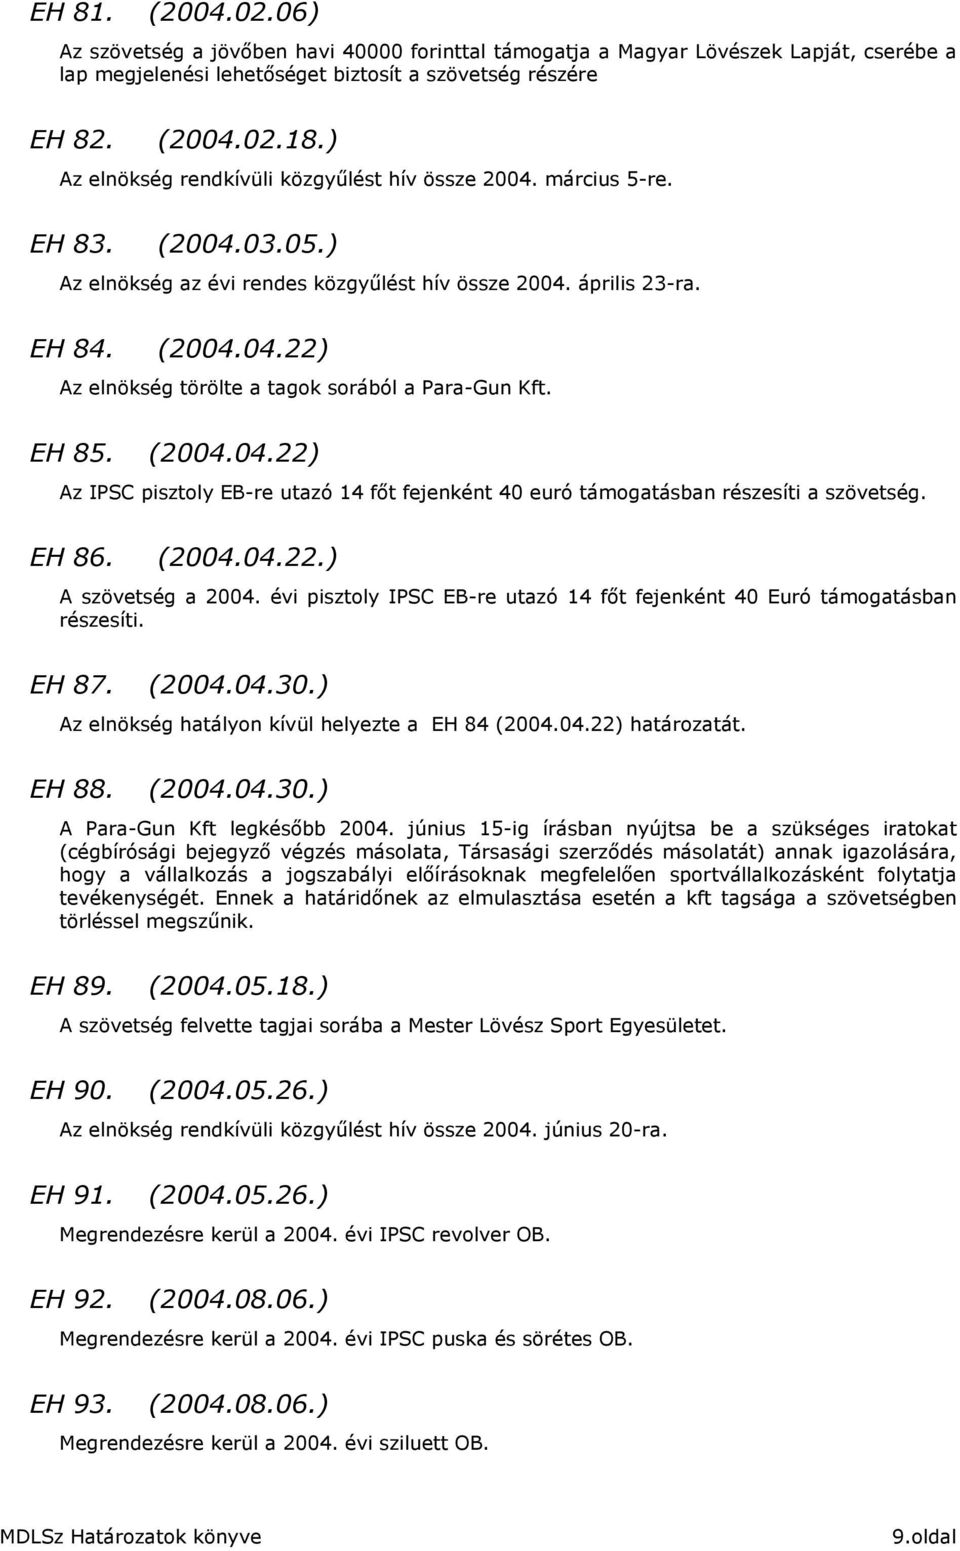 EH 85. (2004.04.22) Az IPSC pisztoly EB-re utazó 14 fıt fejenként 40 euró támogatásban részesíti a szövetség. EH 86. (2004.04.22.) A szövetség a 2004.